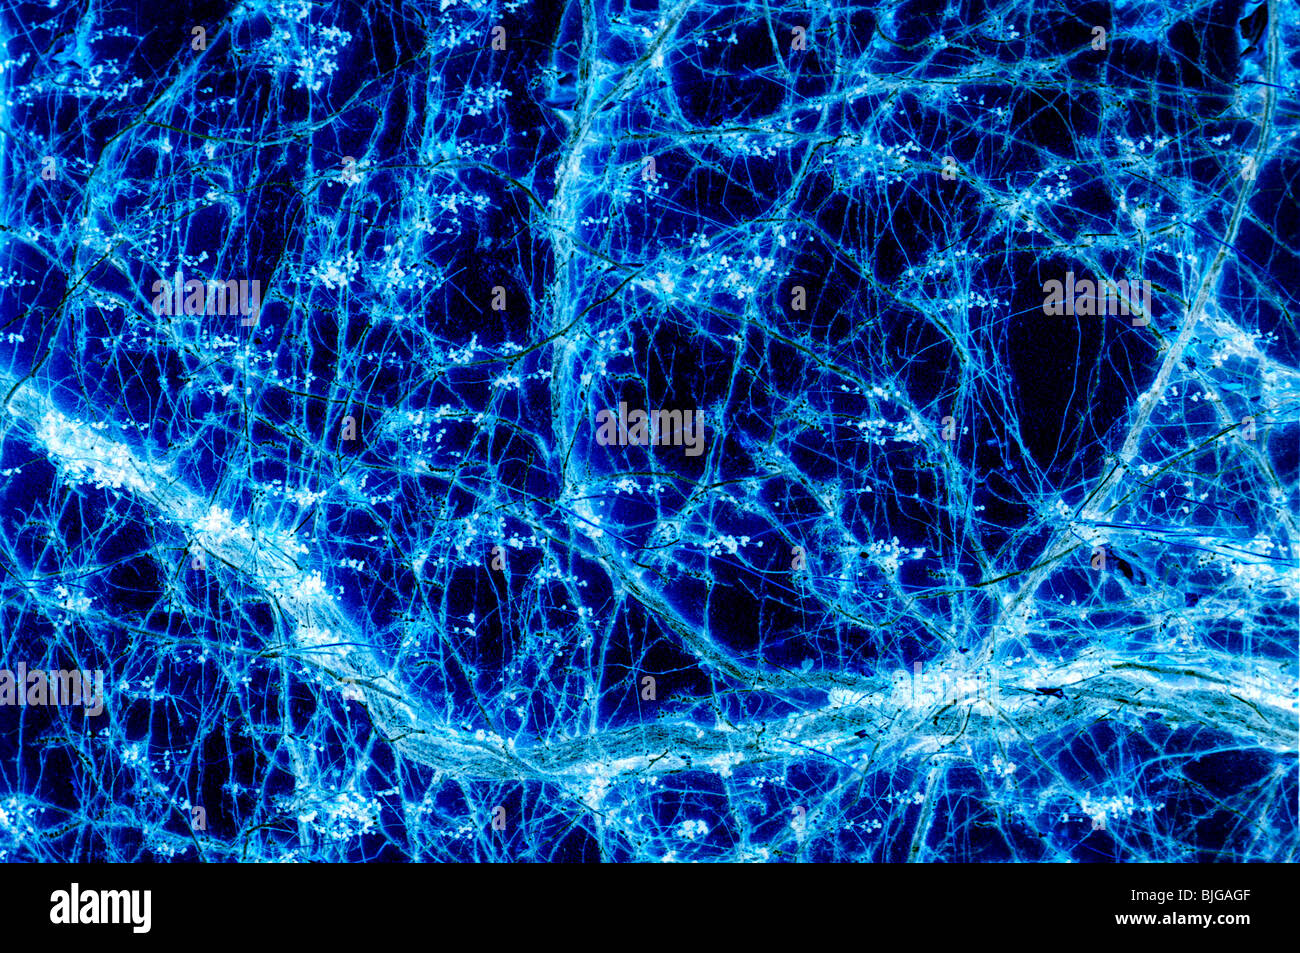 Abstrakt, das sieht aus wie ein bisschen Neuron Verbindungen (eigentlich eine negative Verarbeitung der Reben) Stockfoto